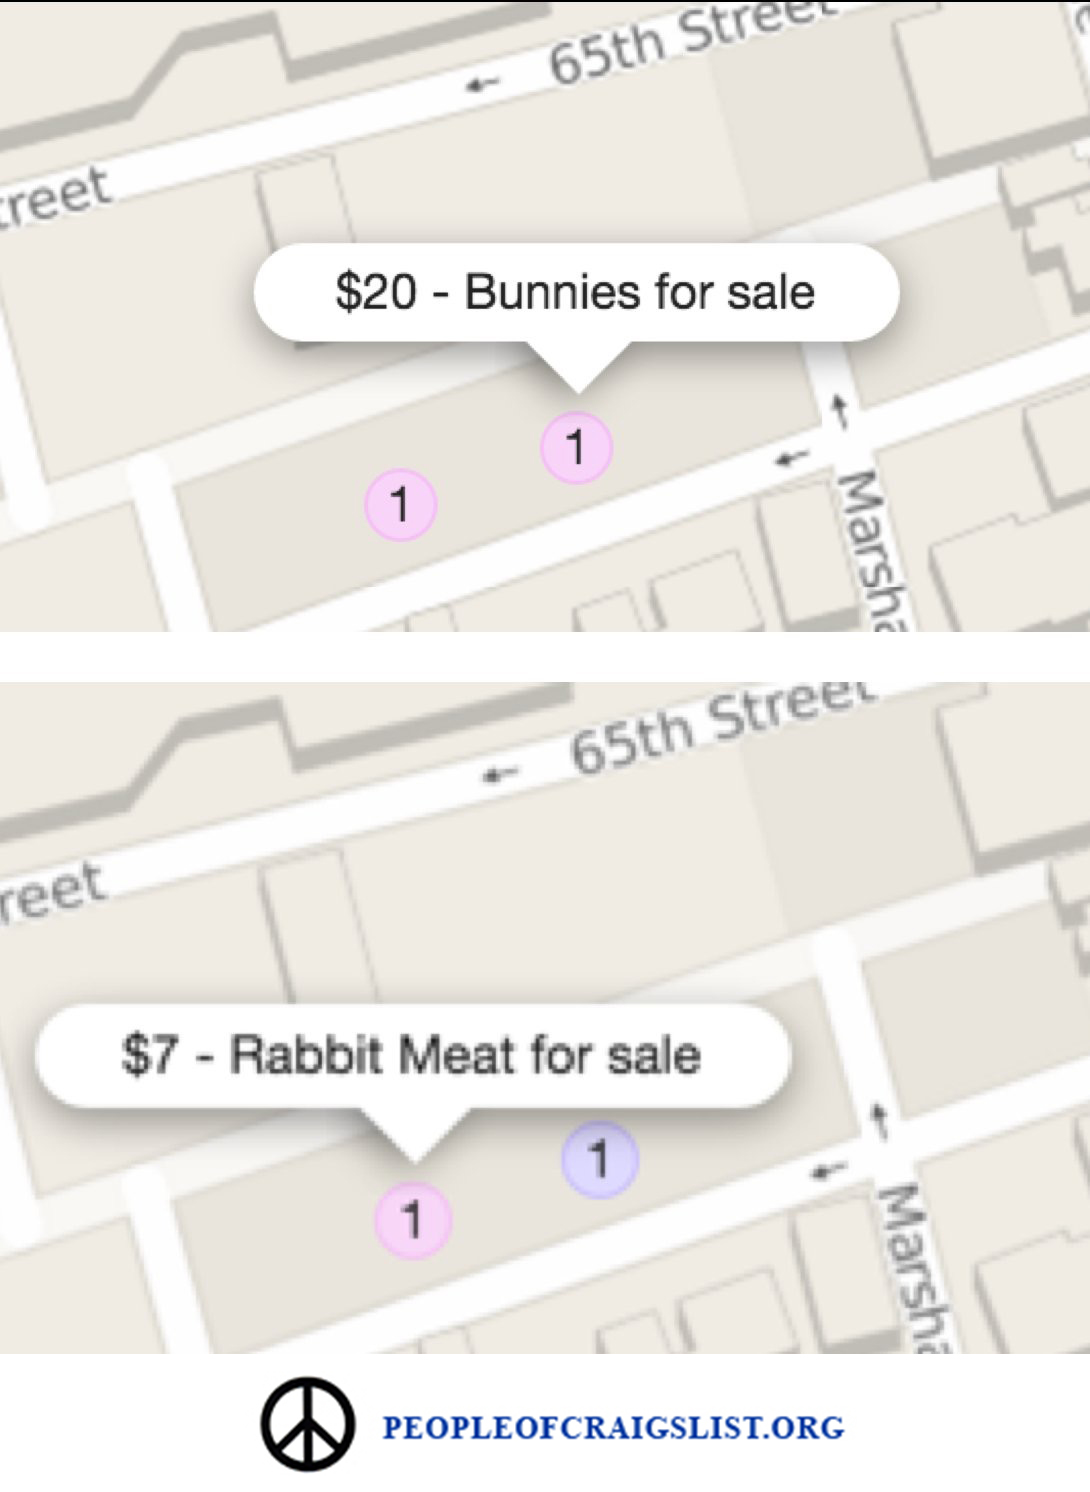 Bunnies for sale on craigslist